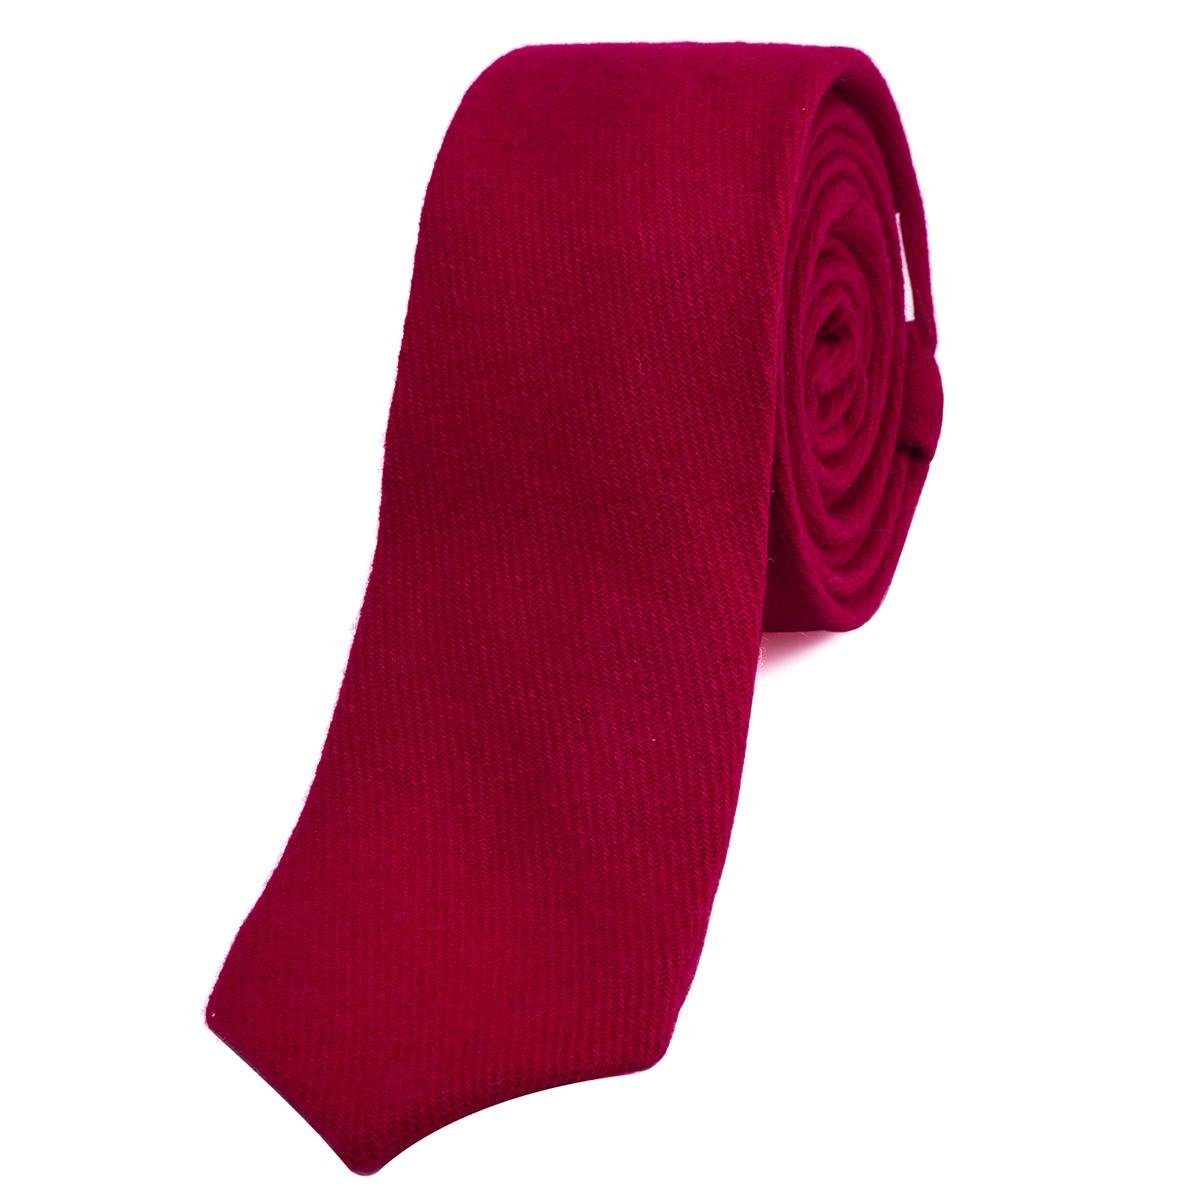 DonDon Krawatte Herren Krawatte 6 cm einfarbig kariert und gepunkt (Packung, 1-St., 1x Krawatte) Baumwolle, verschiedene Muster, für Büro oder festliche Veranstaltungen rot